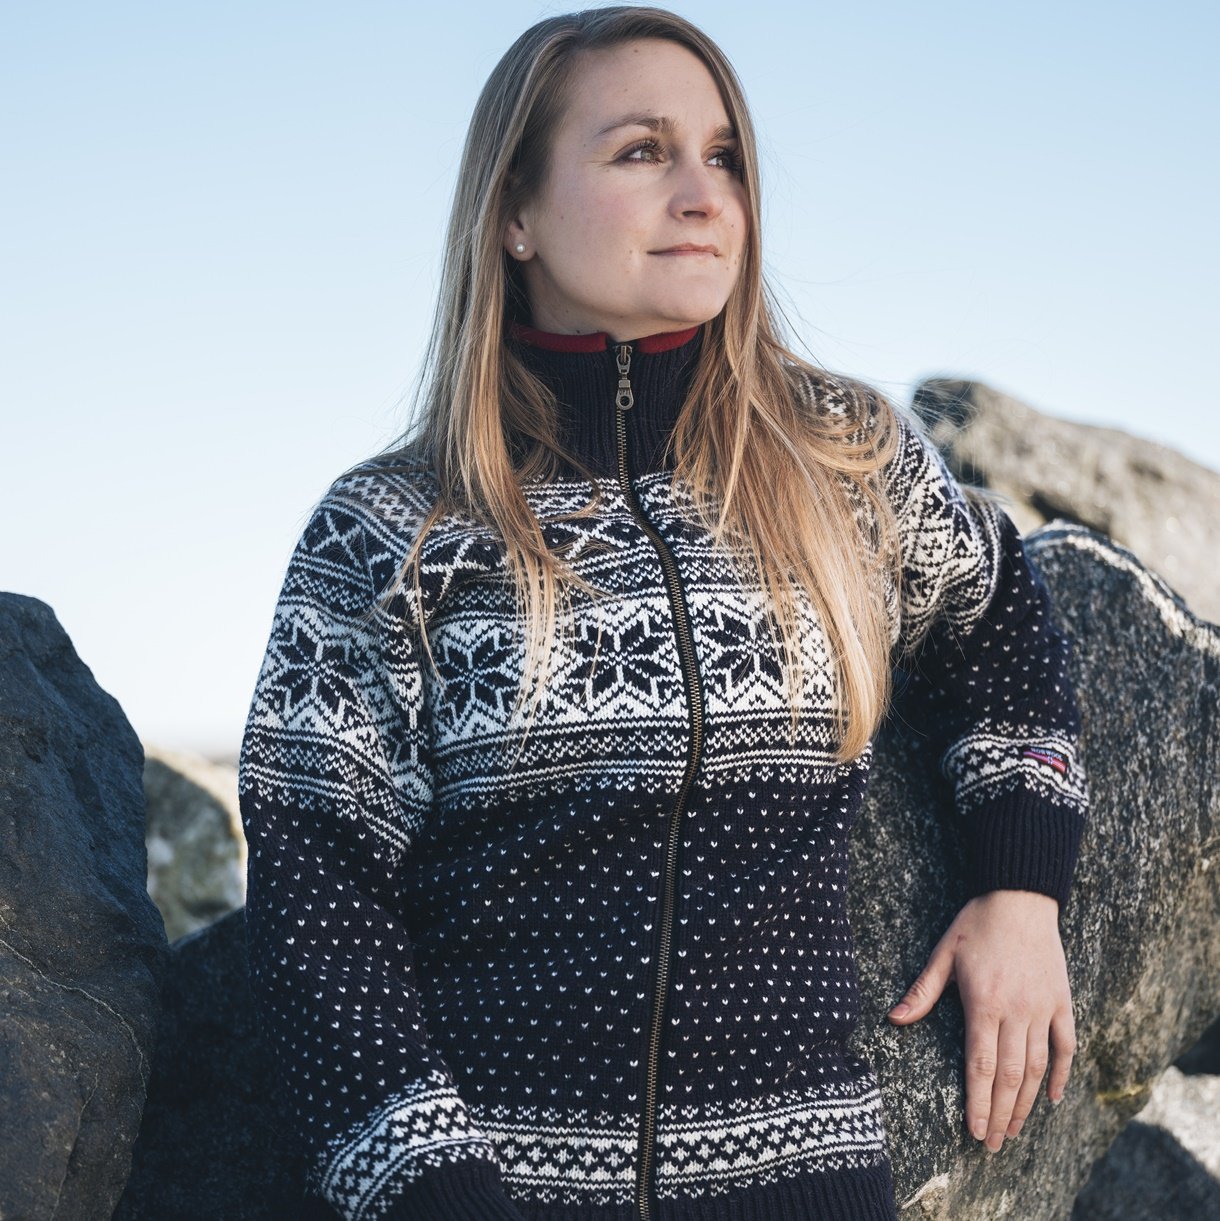 Børnehave Banyan prinsesse Norsk strik cardigan af 100% ren uld i flot design- Uldhuset